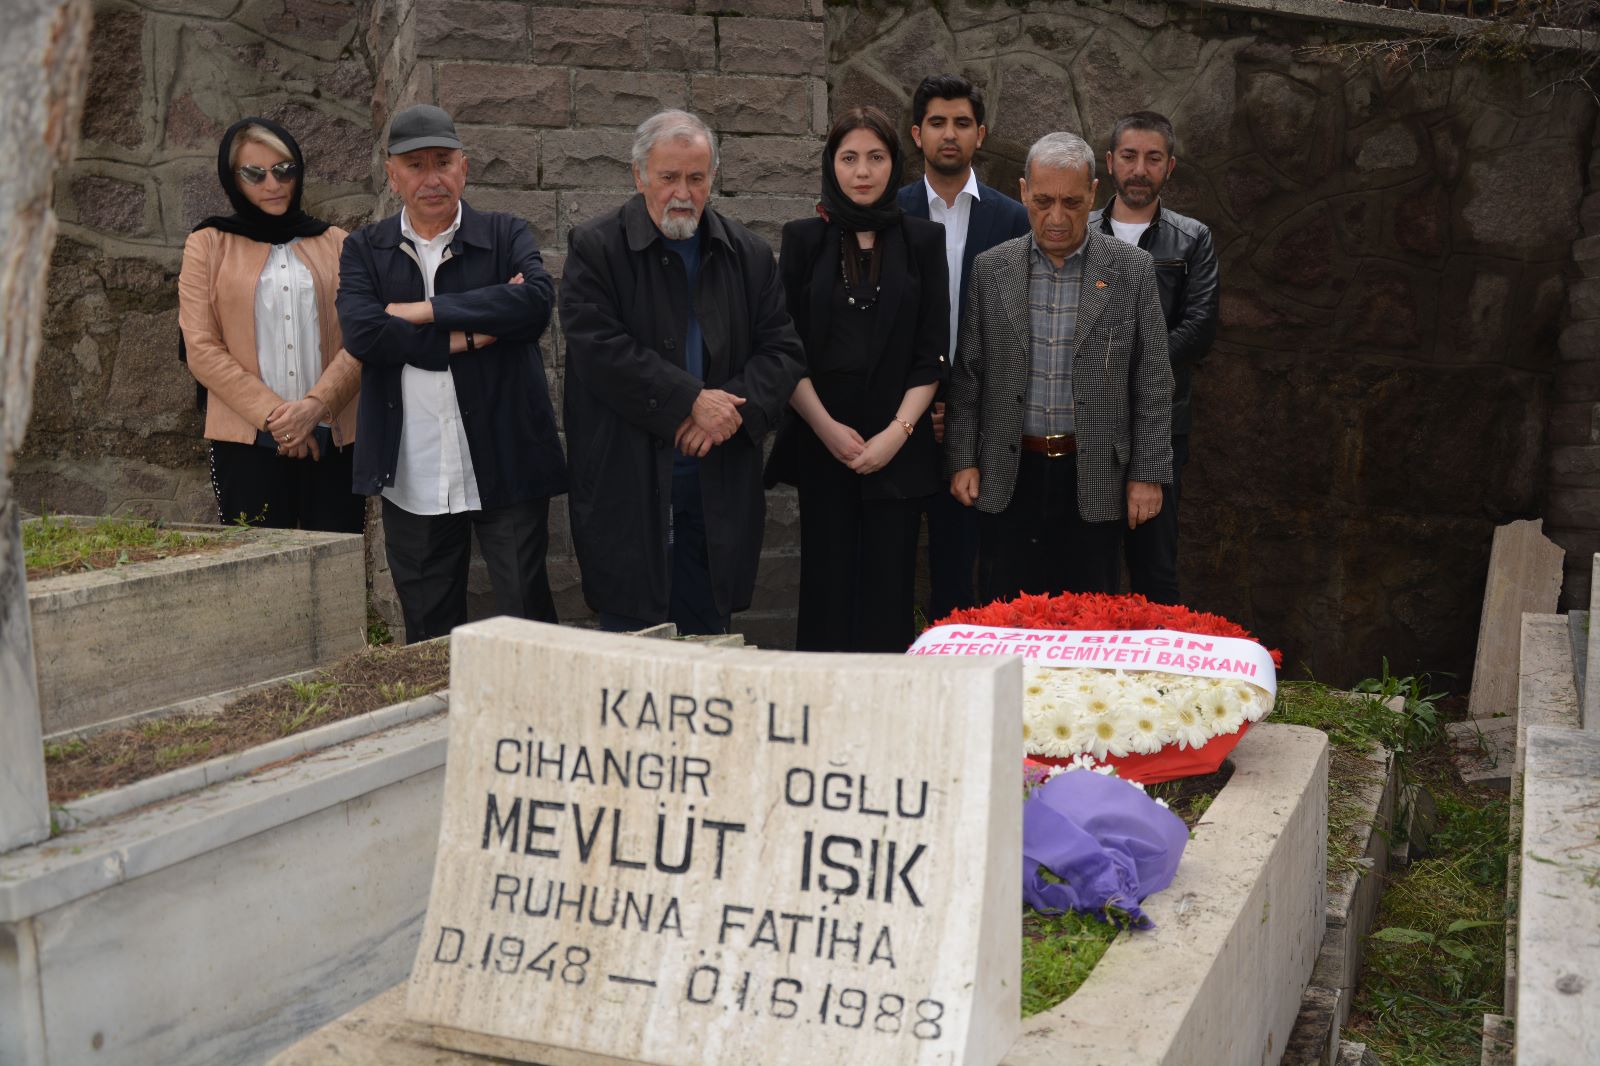 Karslı Gazeteci Mevlüt Işık Mezarı Başında Anıldı